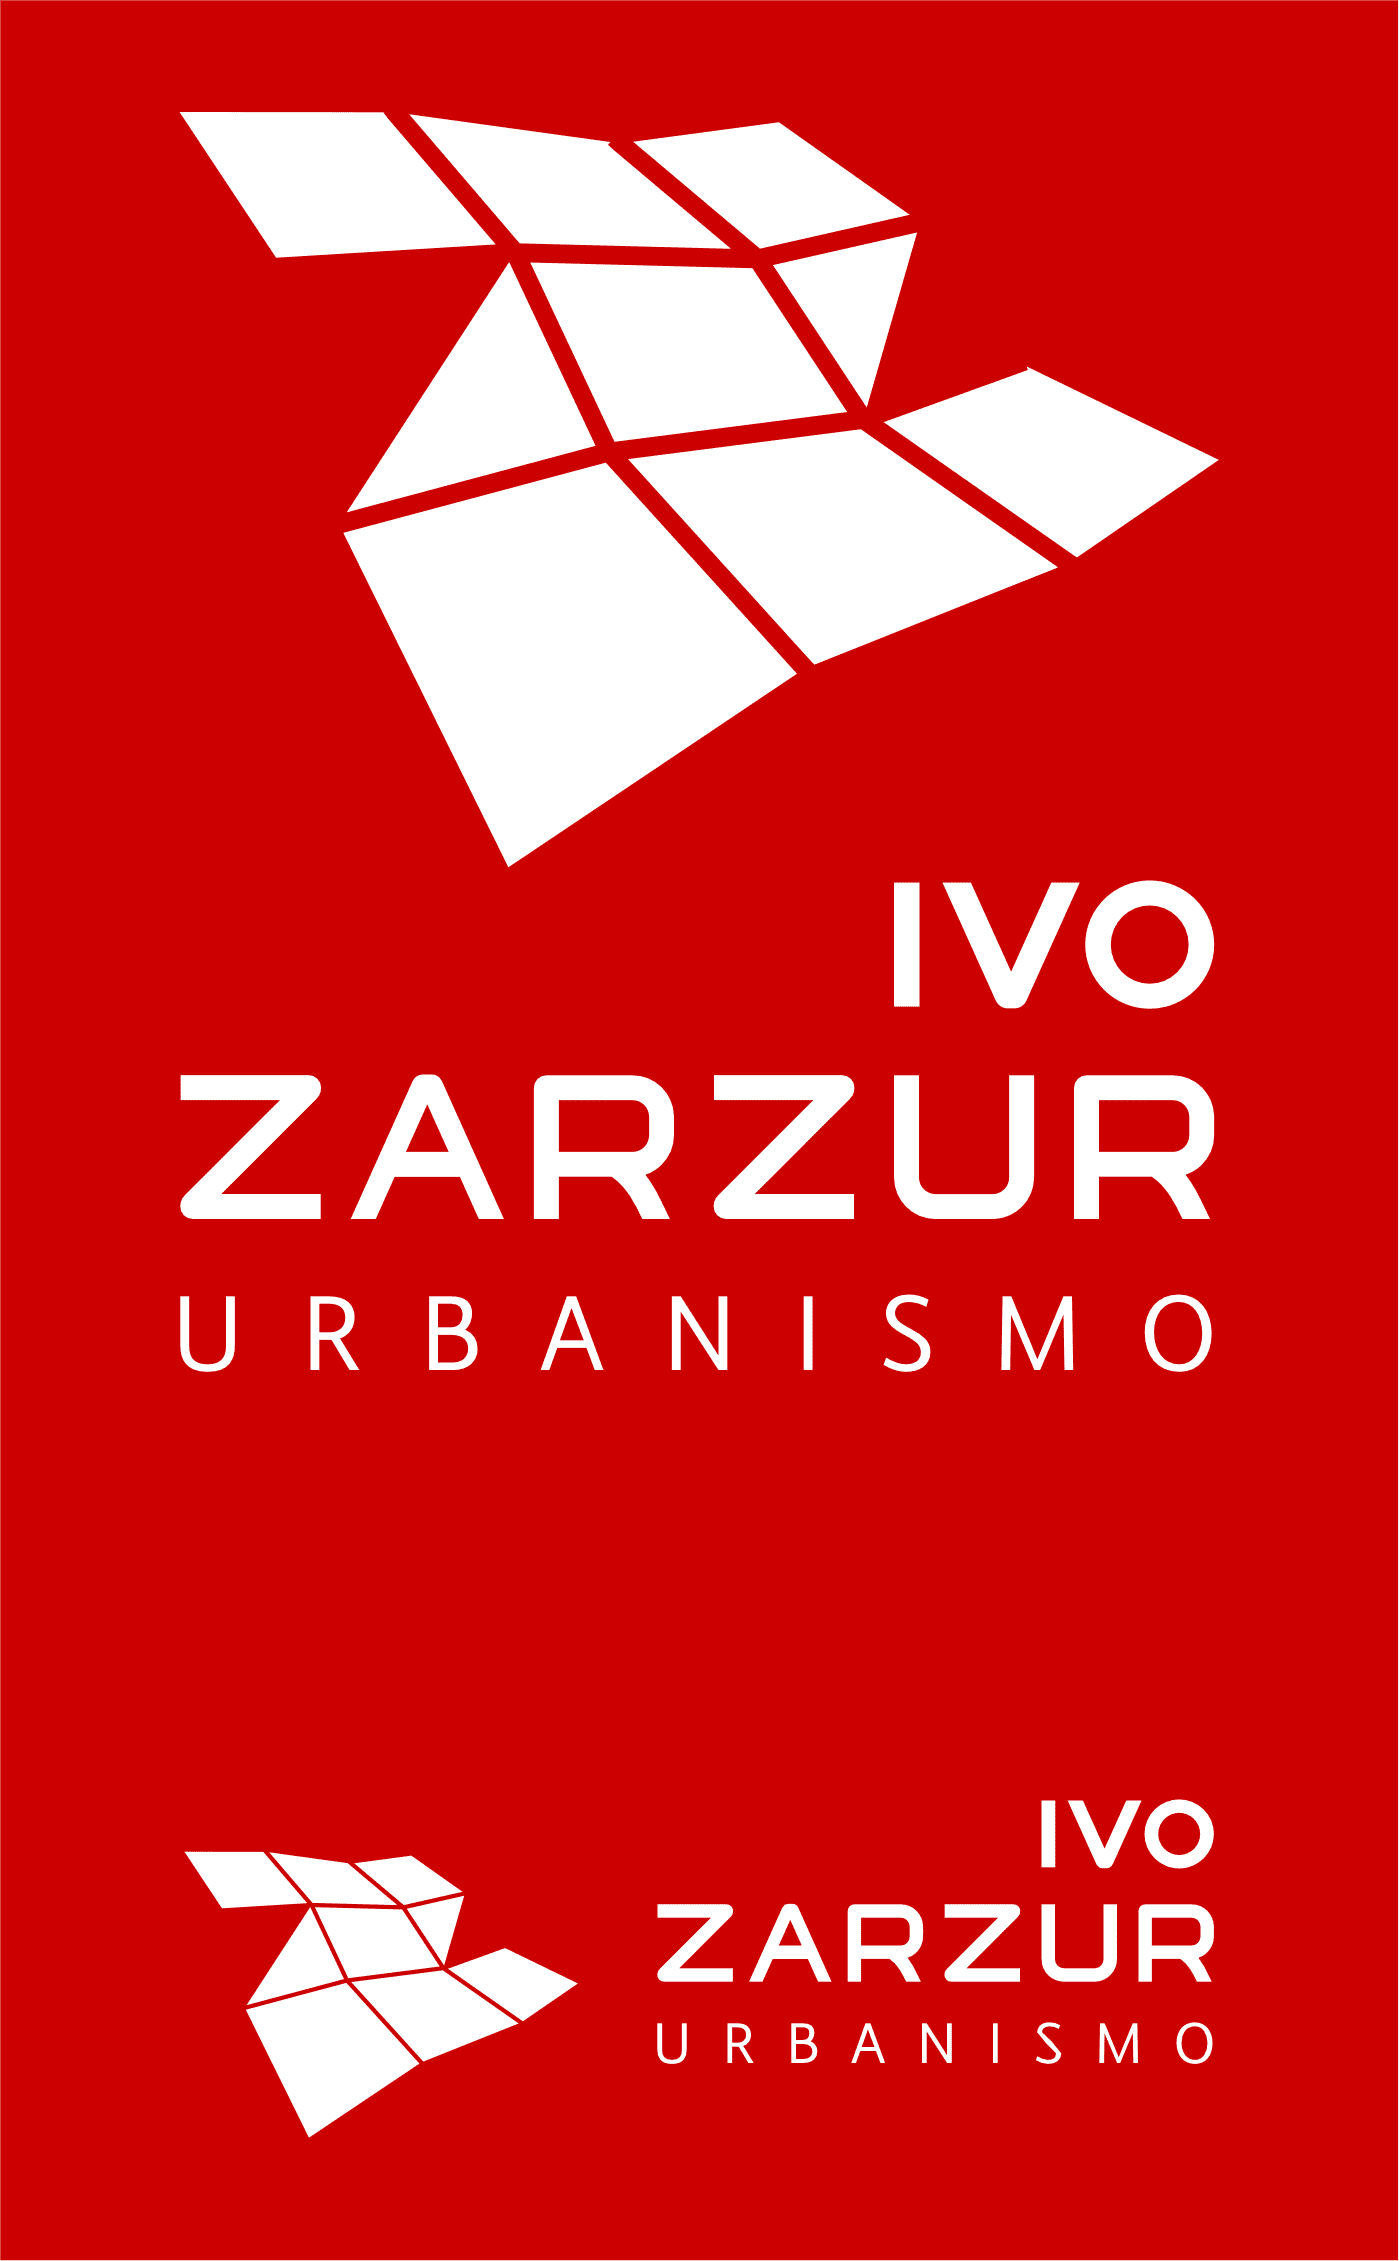 Versão monocromática da Marca Ivo Zarzur Urbanismo sobre fundo vermelho | Design de marca e Identidade Visual assinado pela Brandium